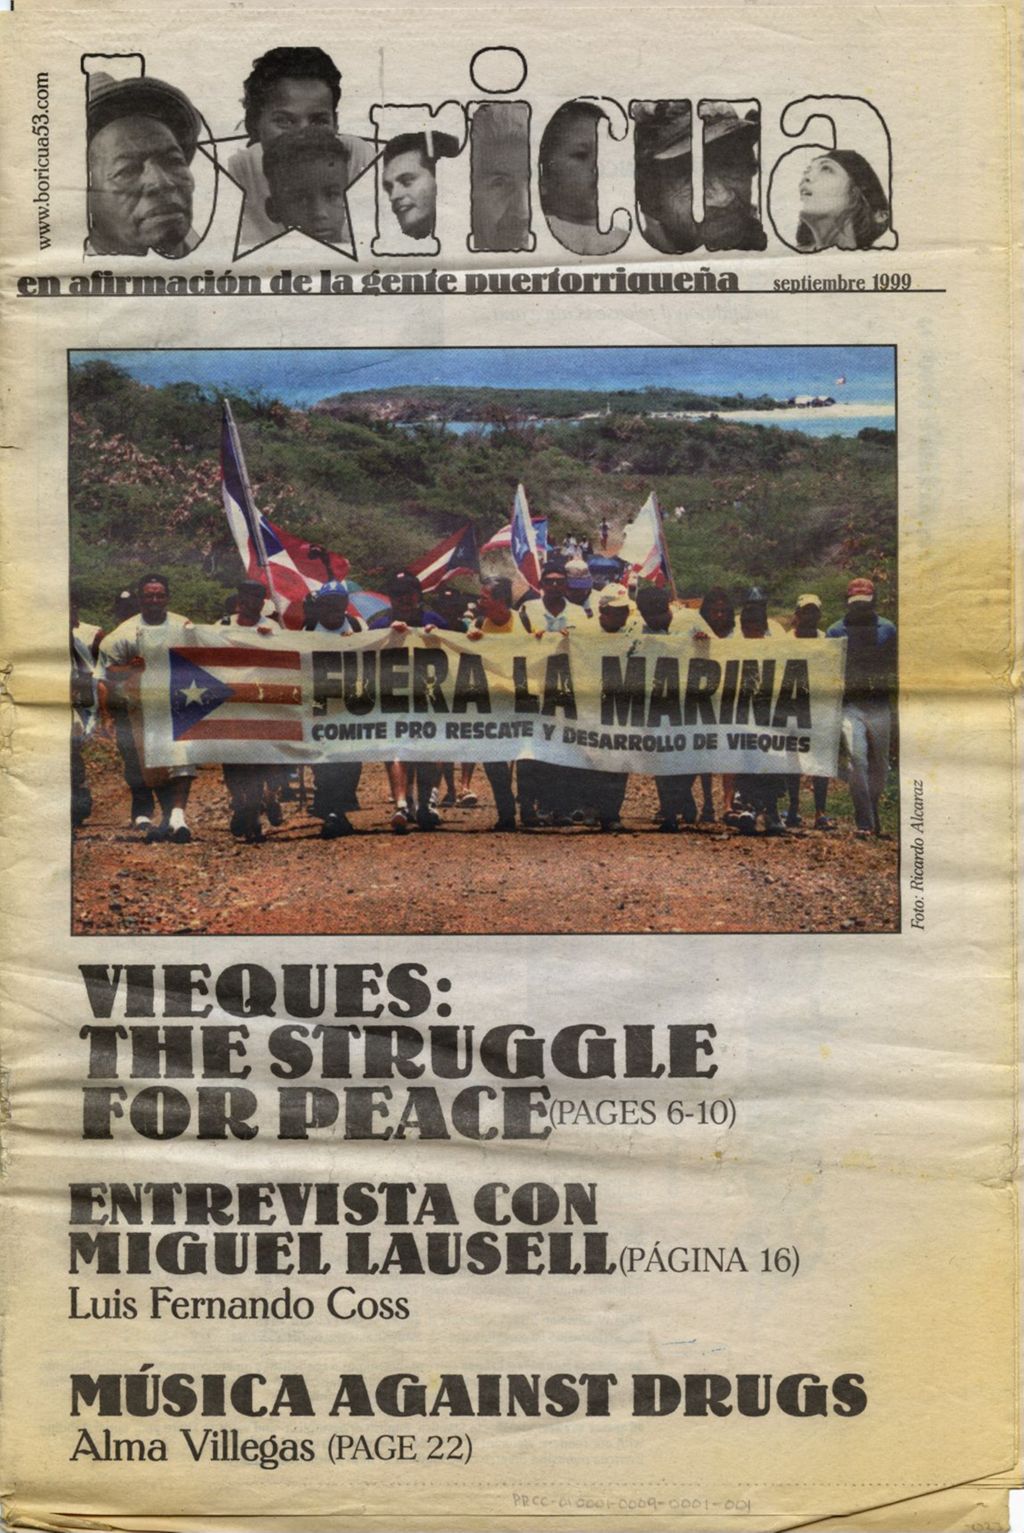 Boricua en affirmació de la gente puertorriqueña; Septiembre 1999